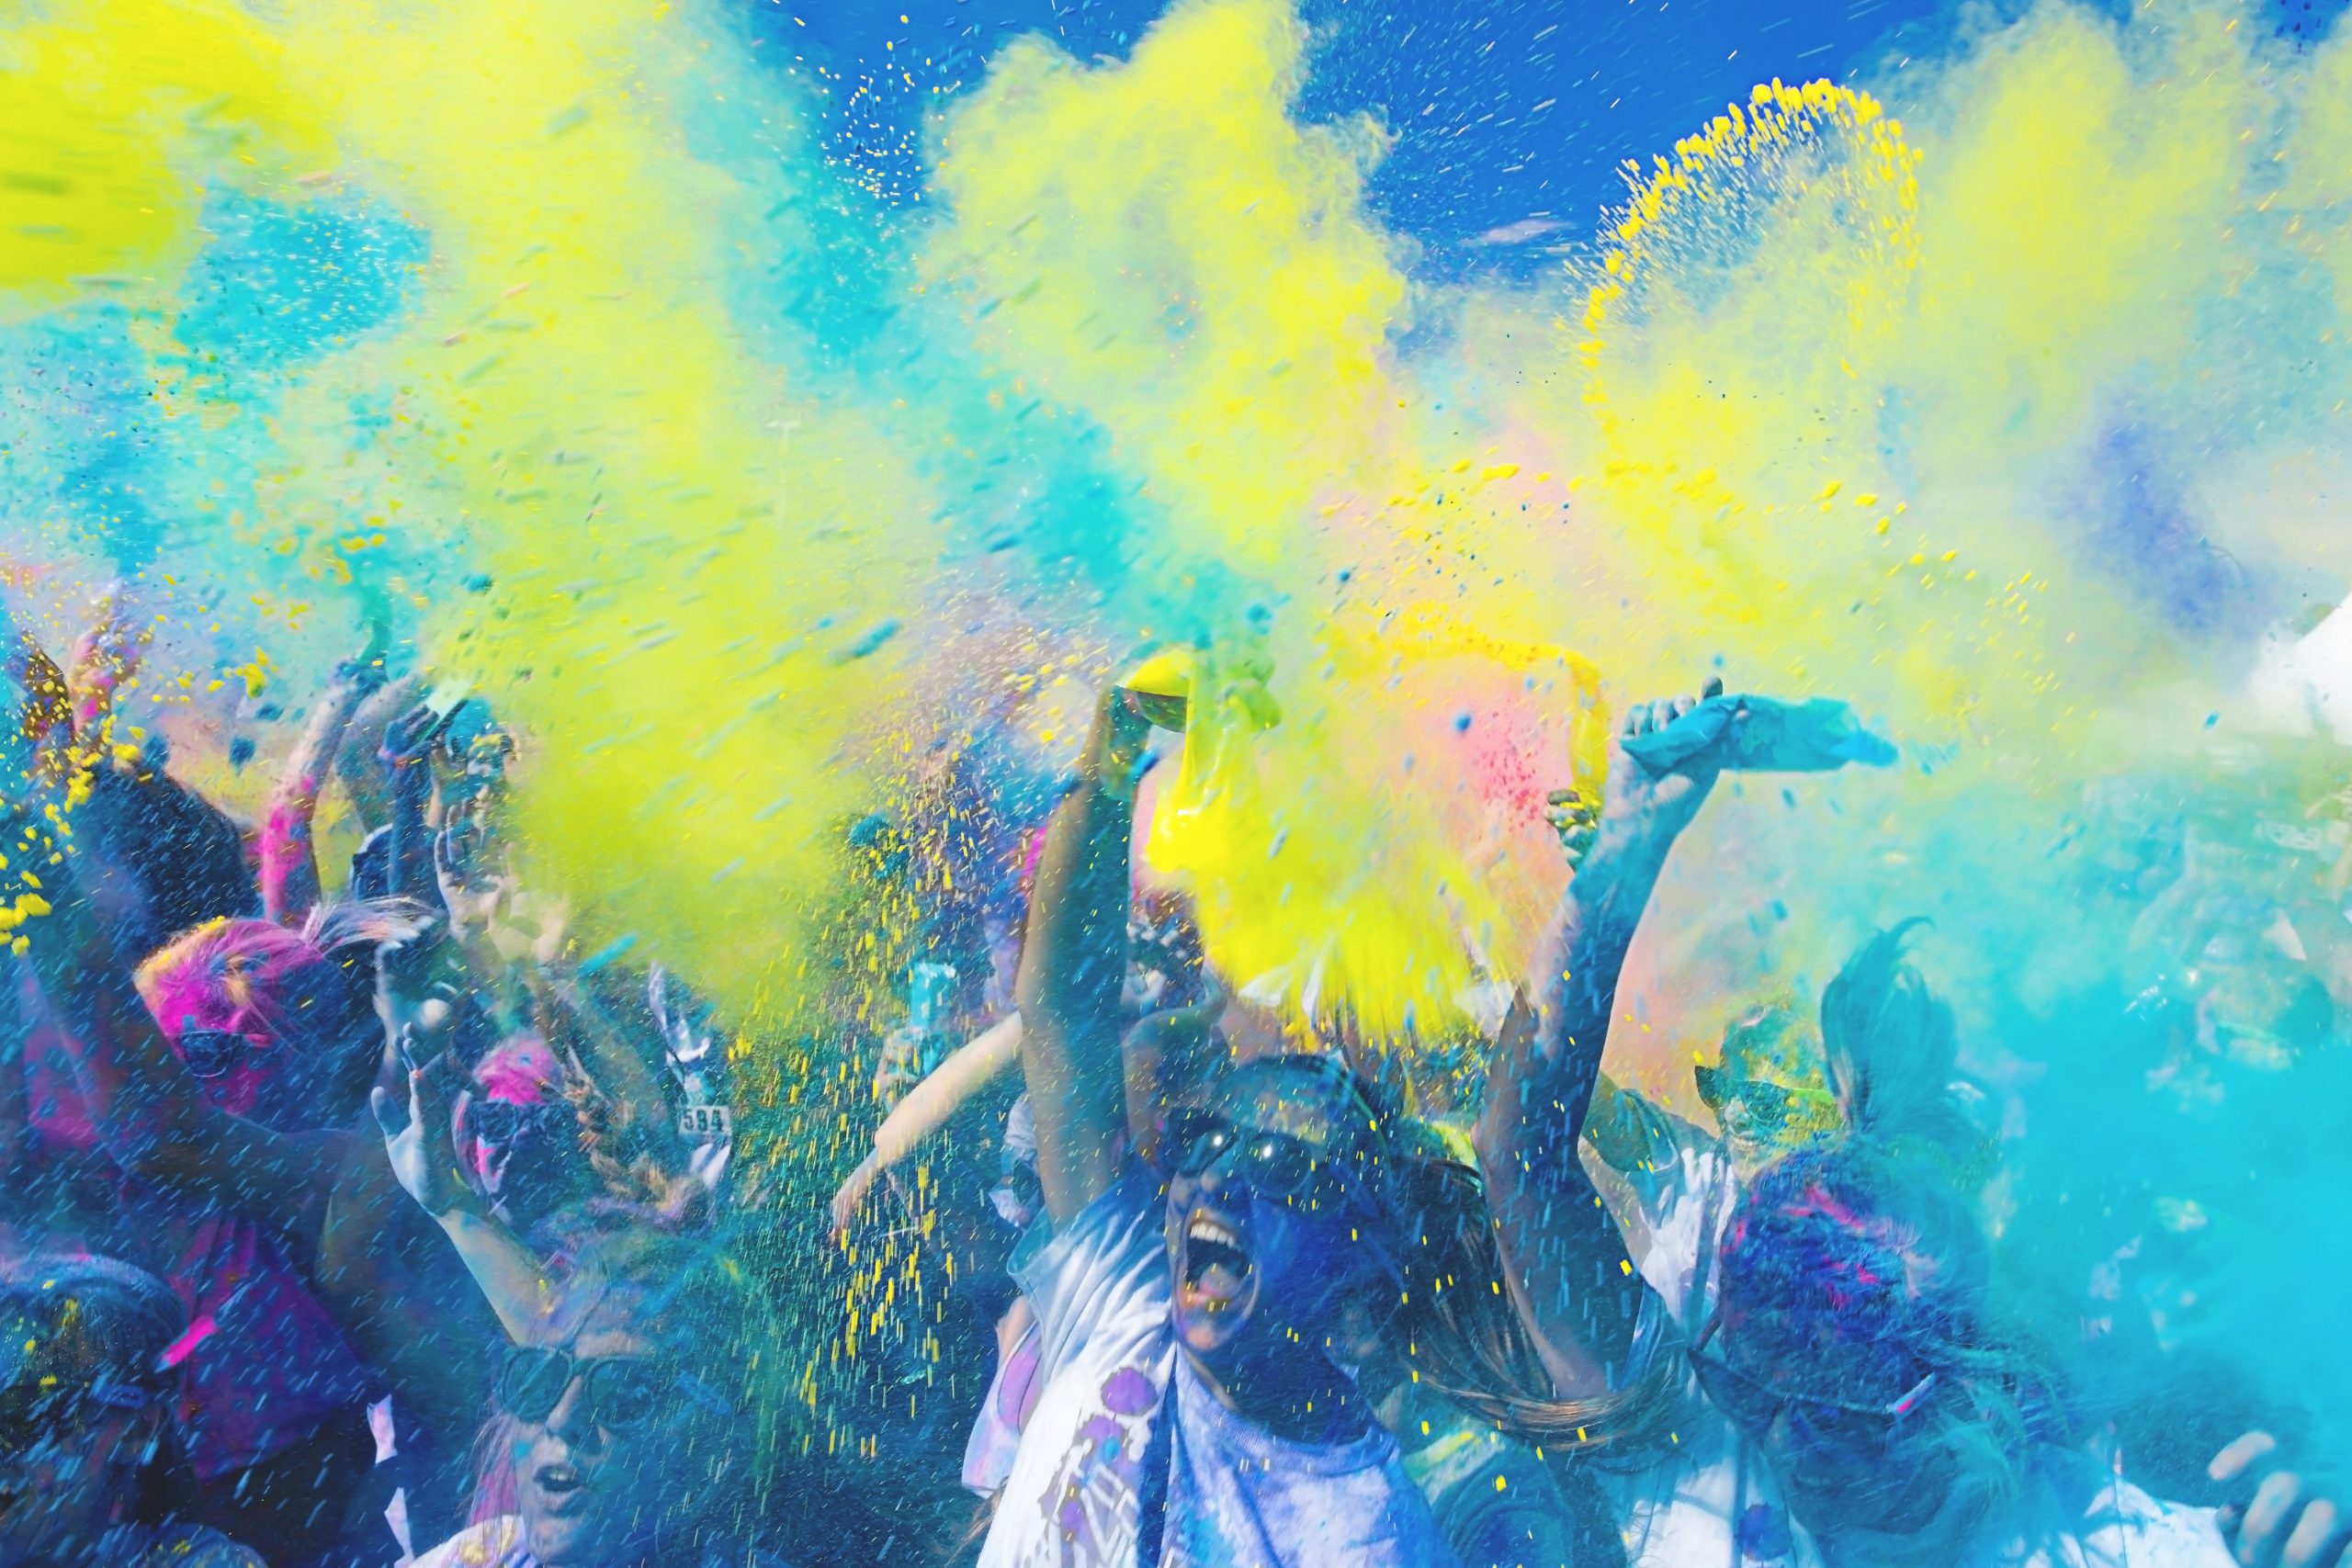 Uma explosão vibrante de cores enquanto pessoas alegres comemoram com punhados de tinta em pó nas festas universitárias, criando uma atmosfera animada e dinâmica.